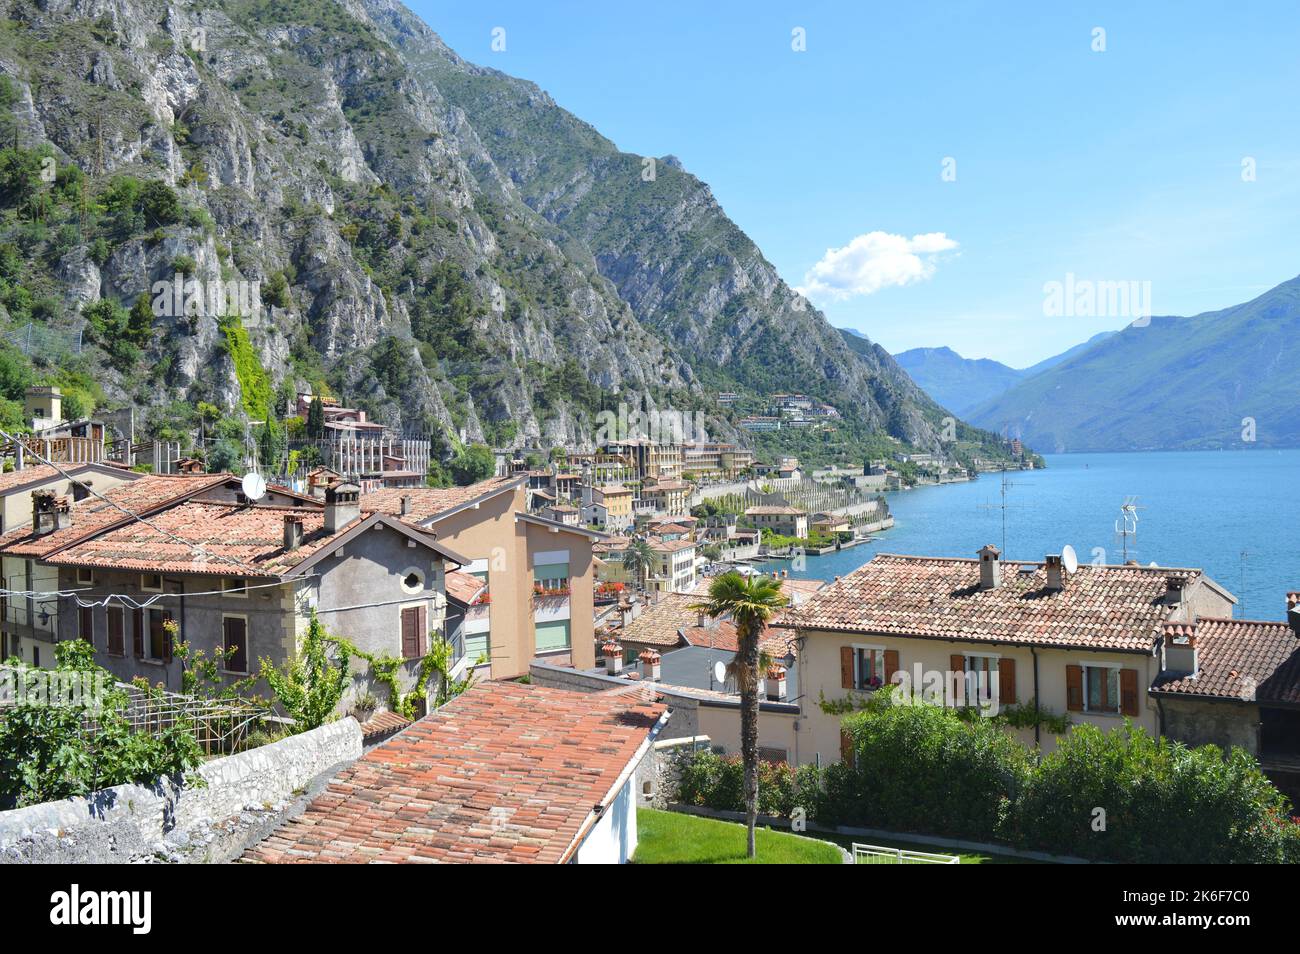 Limone sul Garda, lake and mountain view Stock Photo